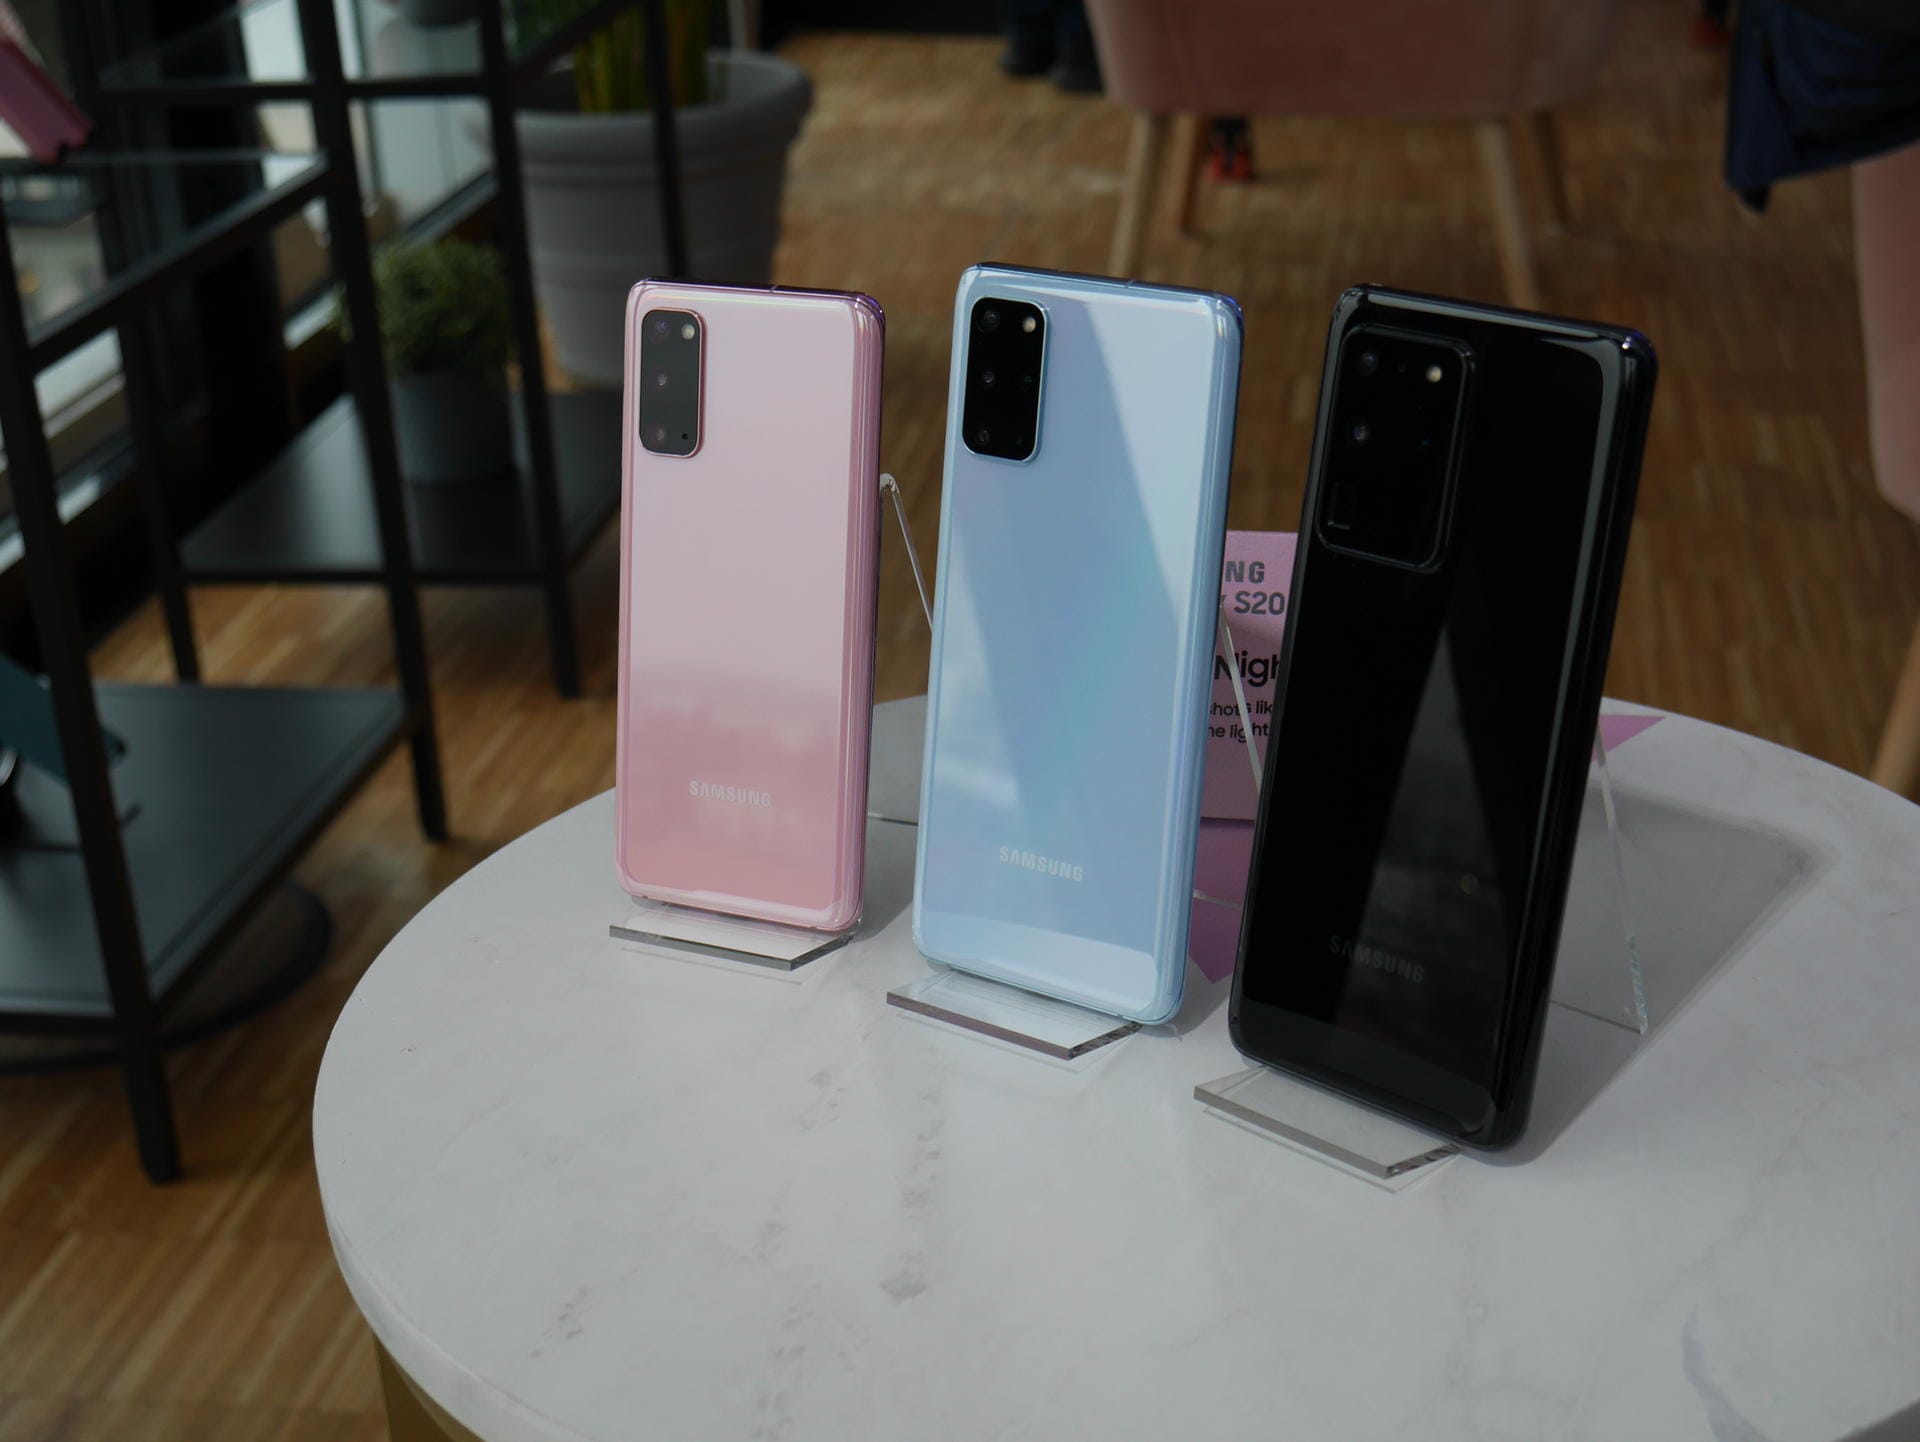 Die neuen Galaxy-Smartphones kommen in den Farben Blau, Rosa, Schwarz und Grau.